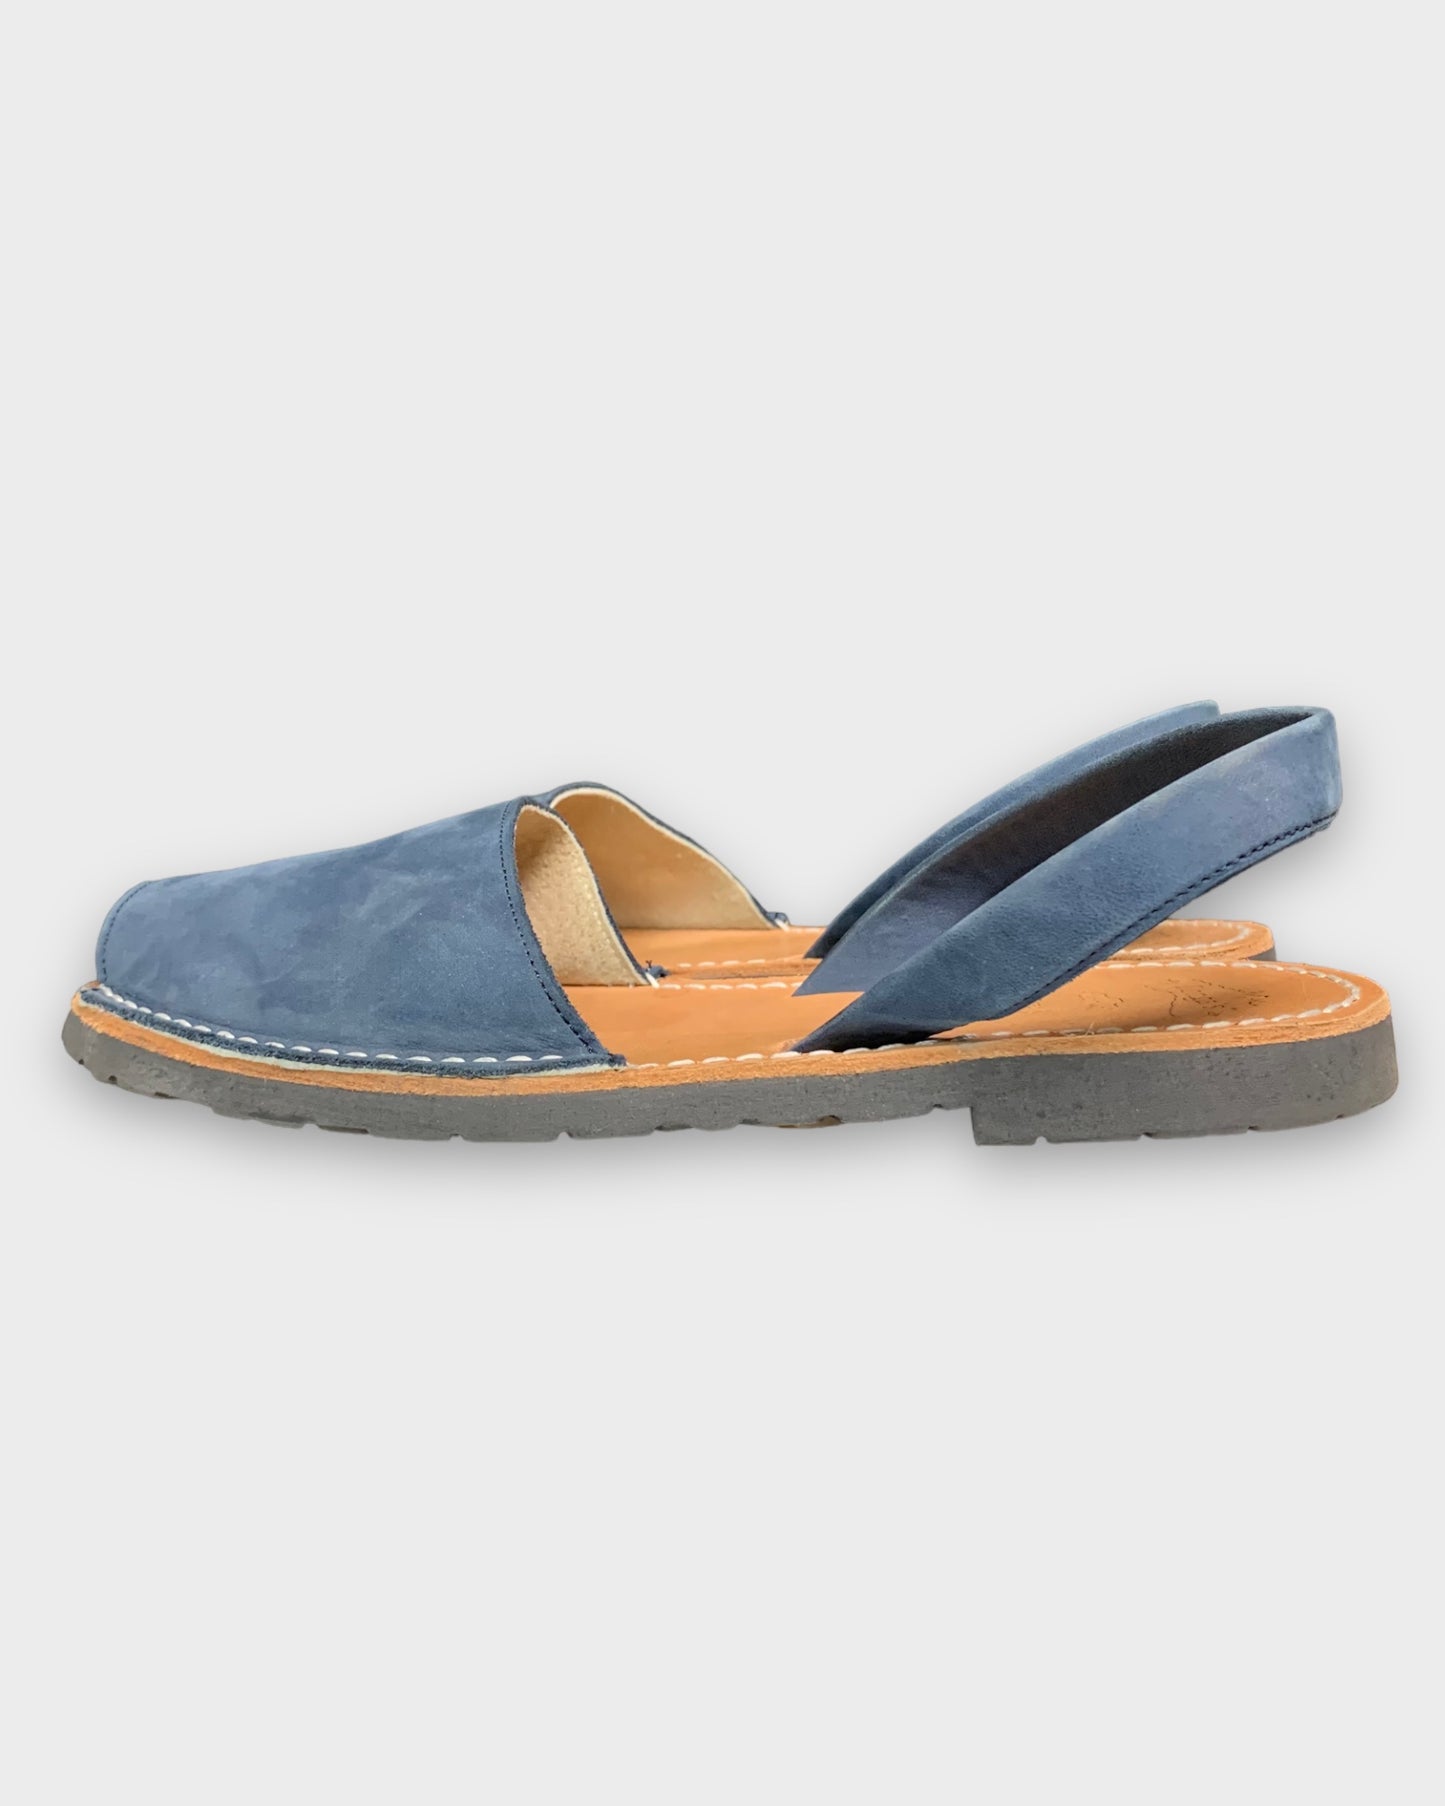 Blue llongas sandals